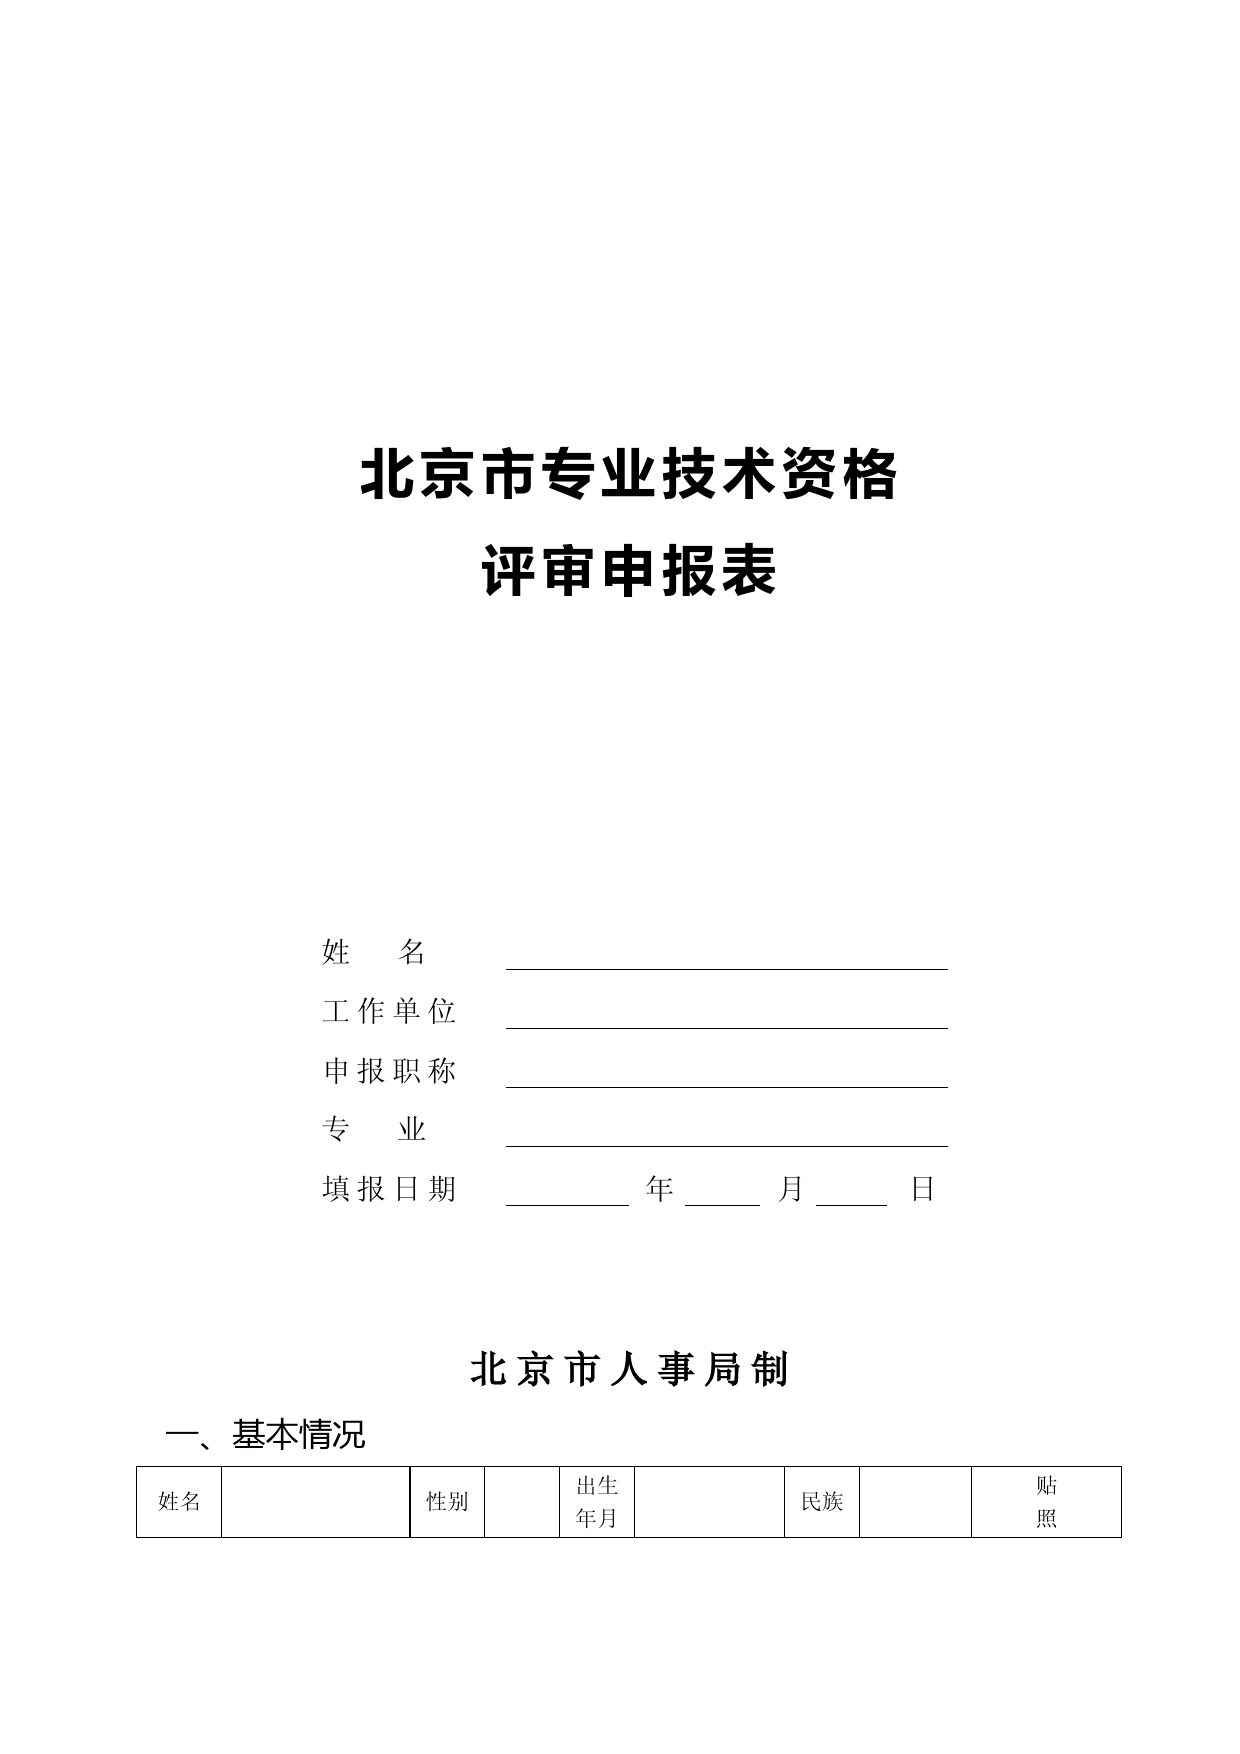 北京市专业技术资格评审申报表